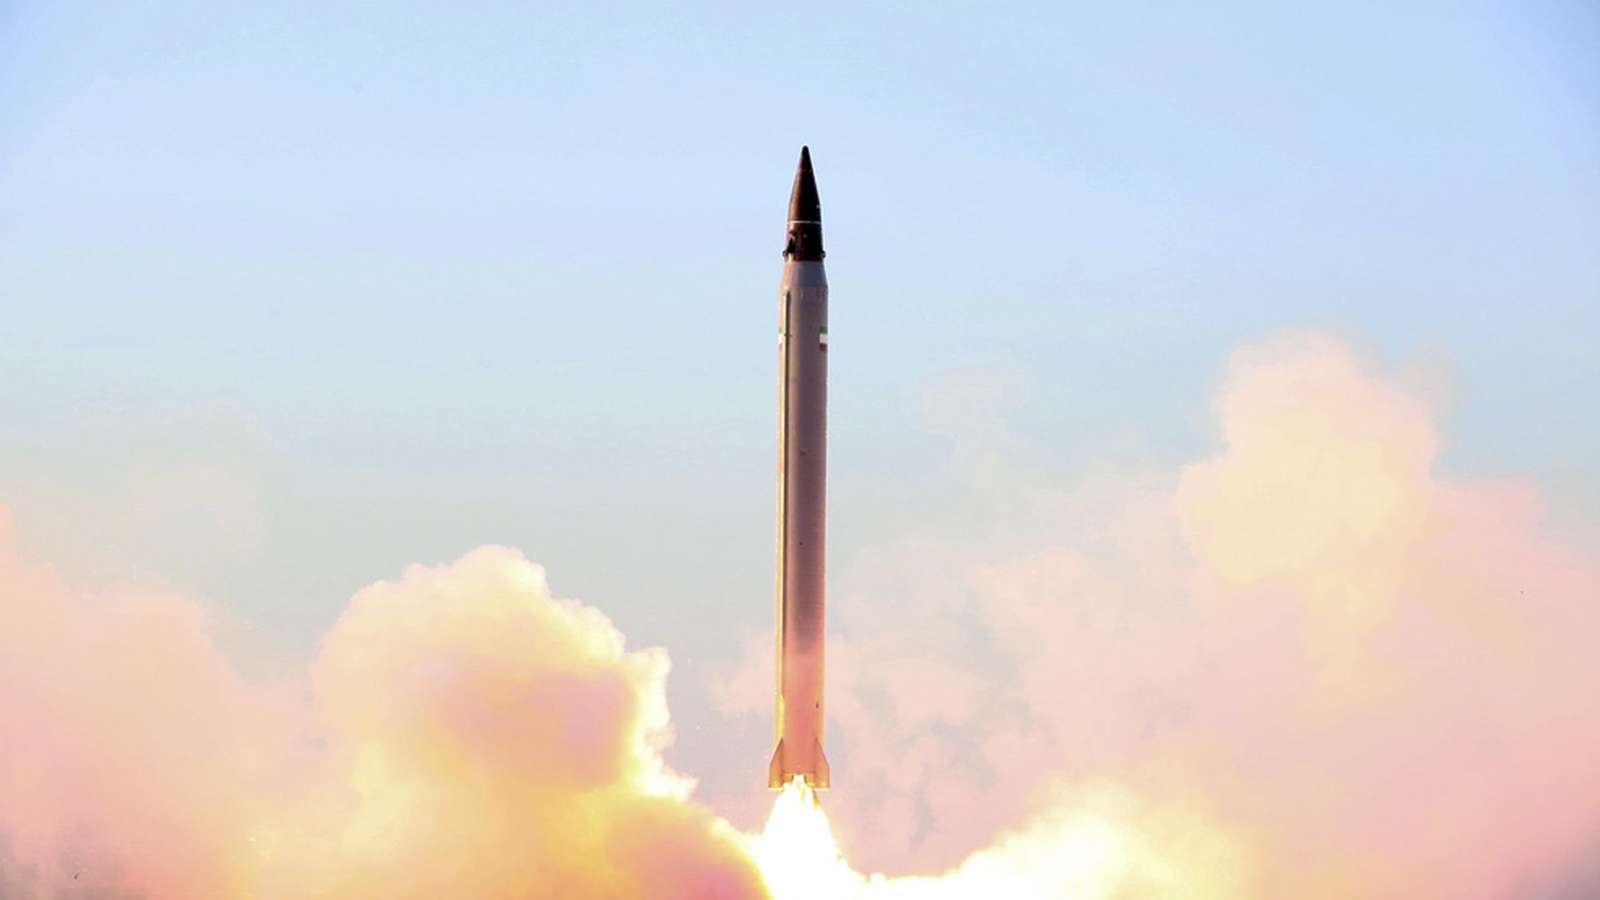 ‪إيران أجرت تجارب على إطلاق صواريخ بالستية بأكثر من مناسبة‬ إيران أجرت تجارب على إطلاق صواريخ بالستية بأكثر من مناسبة (أسوشيتد برس)